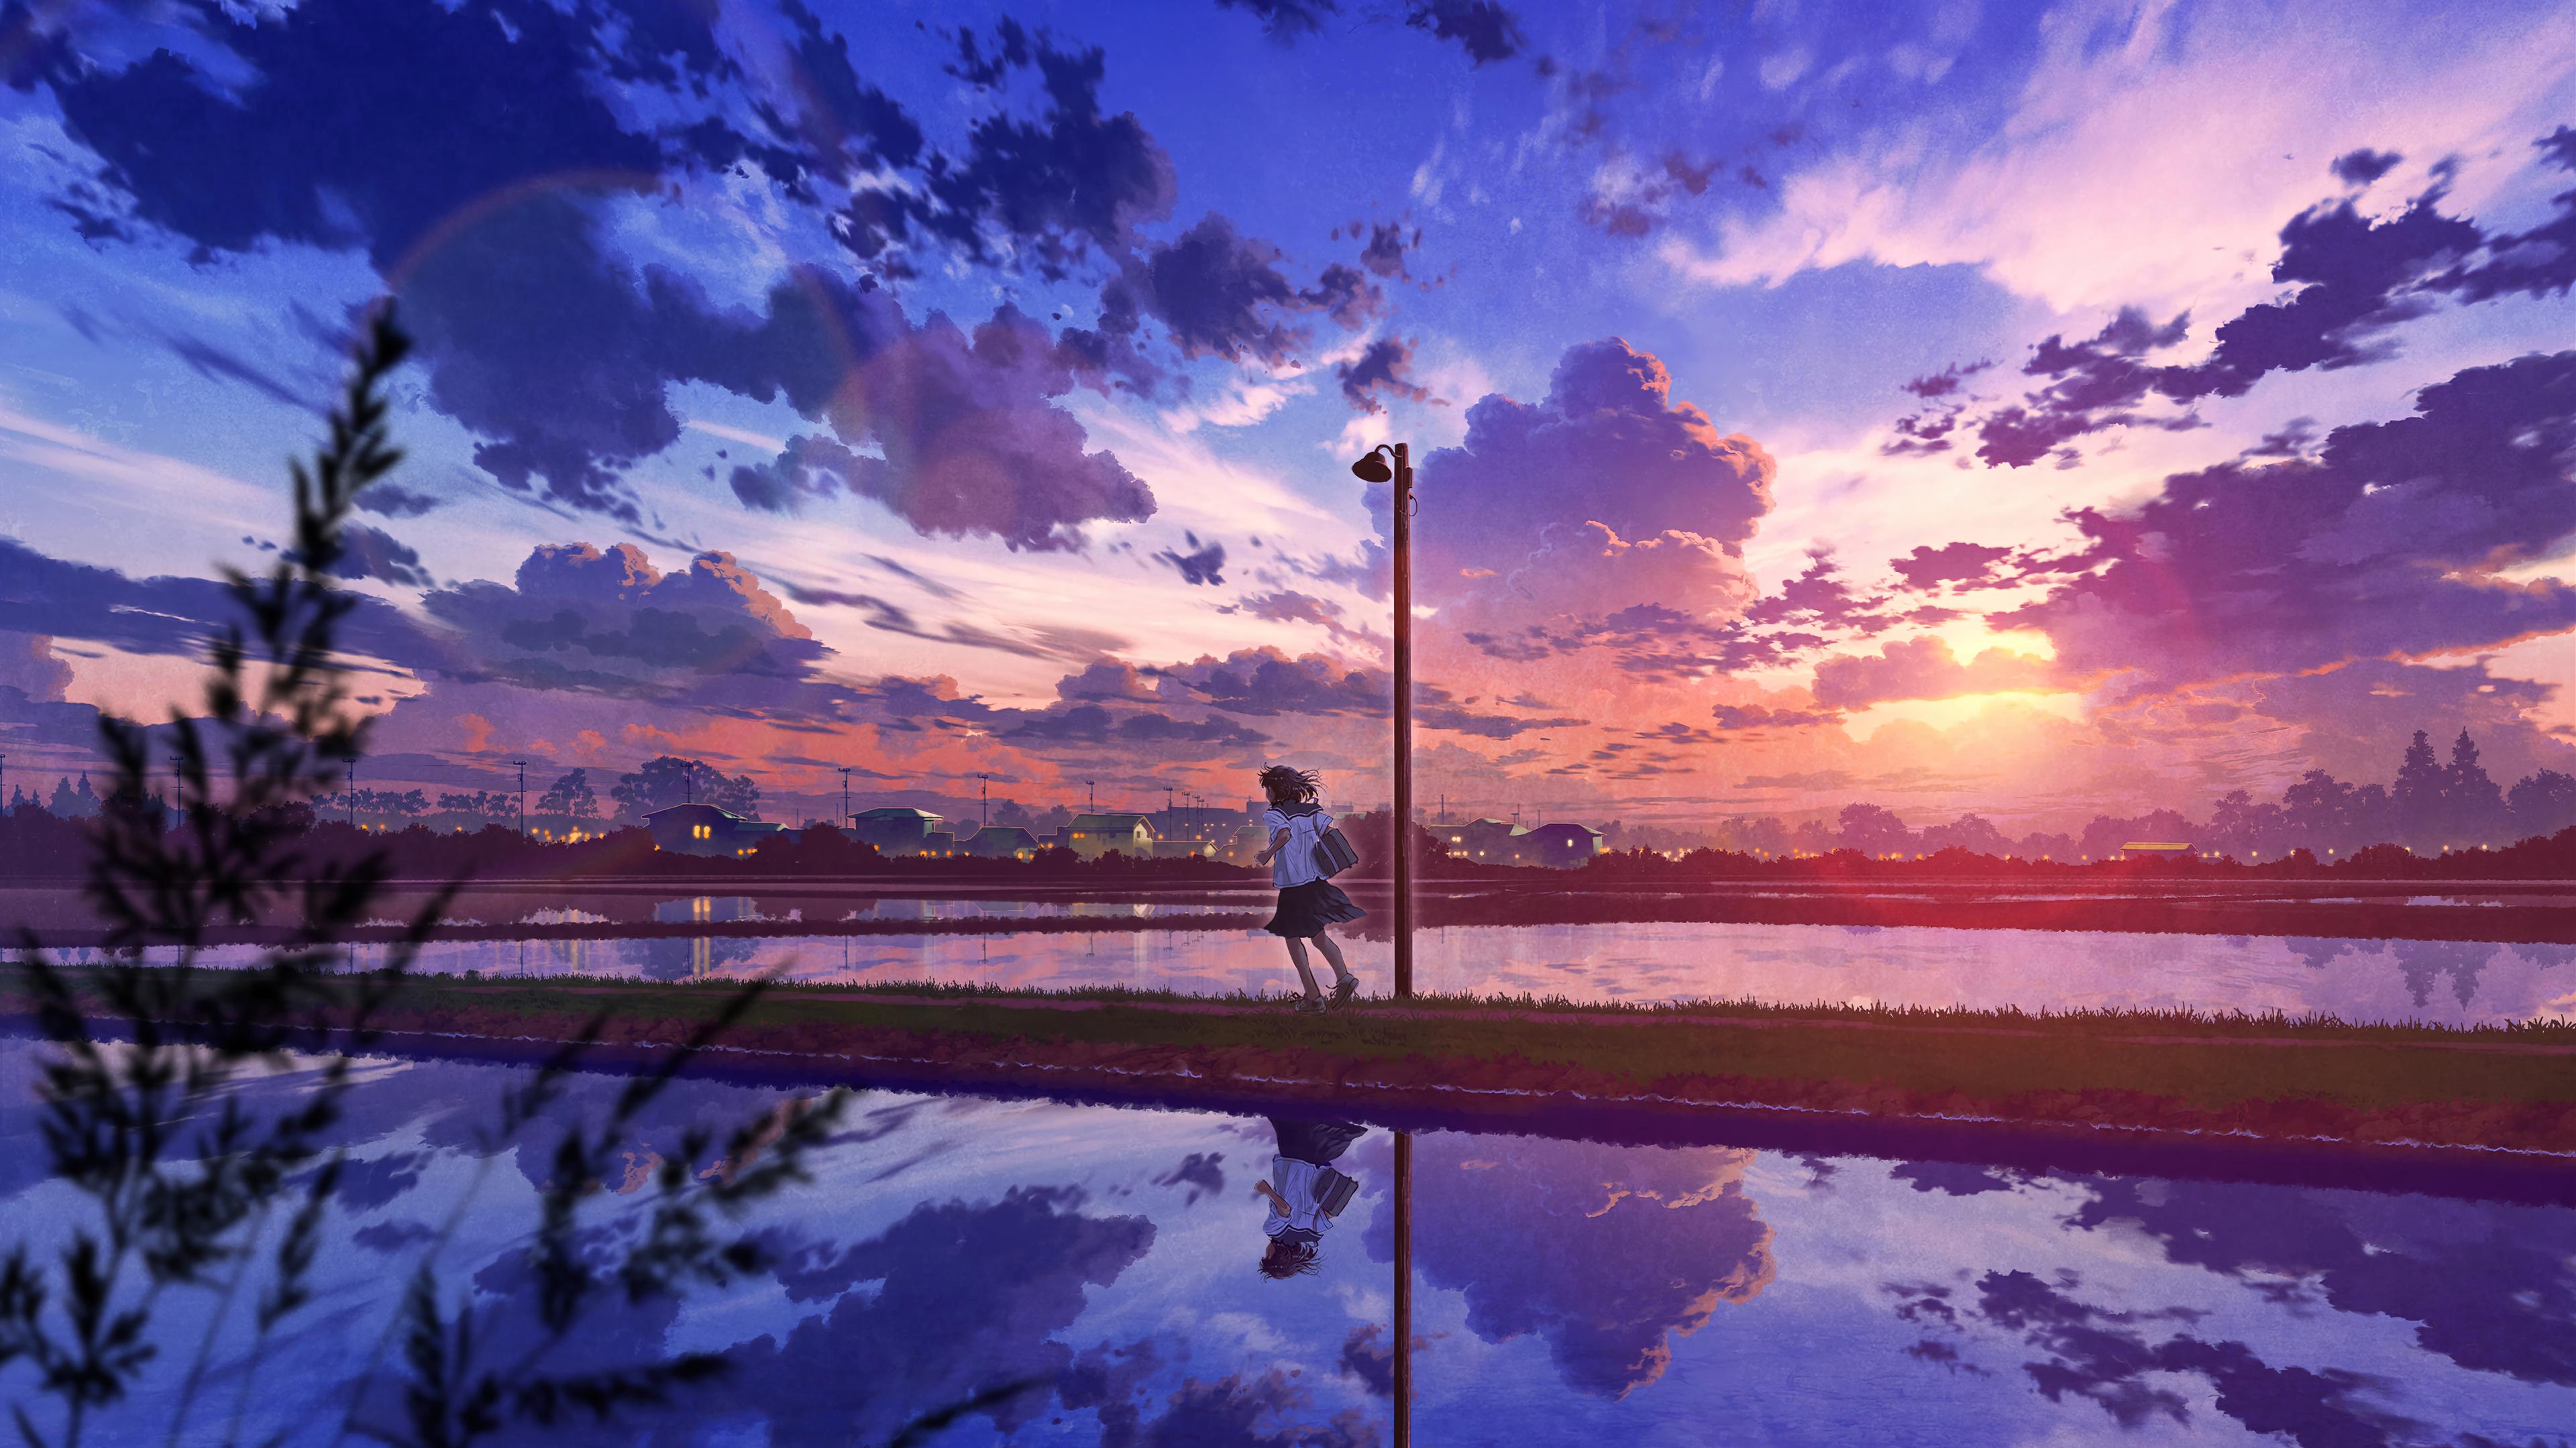 Anime Girl Student Sunrise Scenery Art 4K Phone iPhone Wallpaper